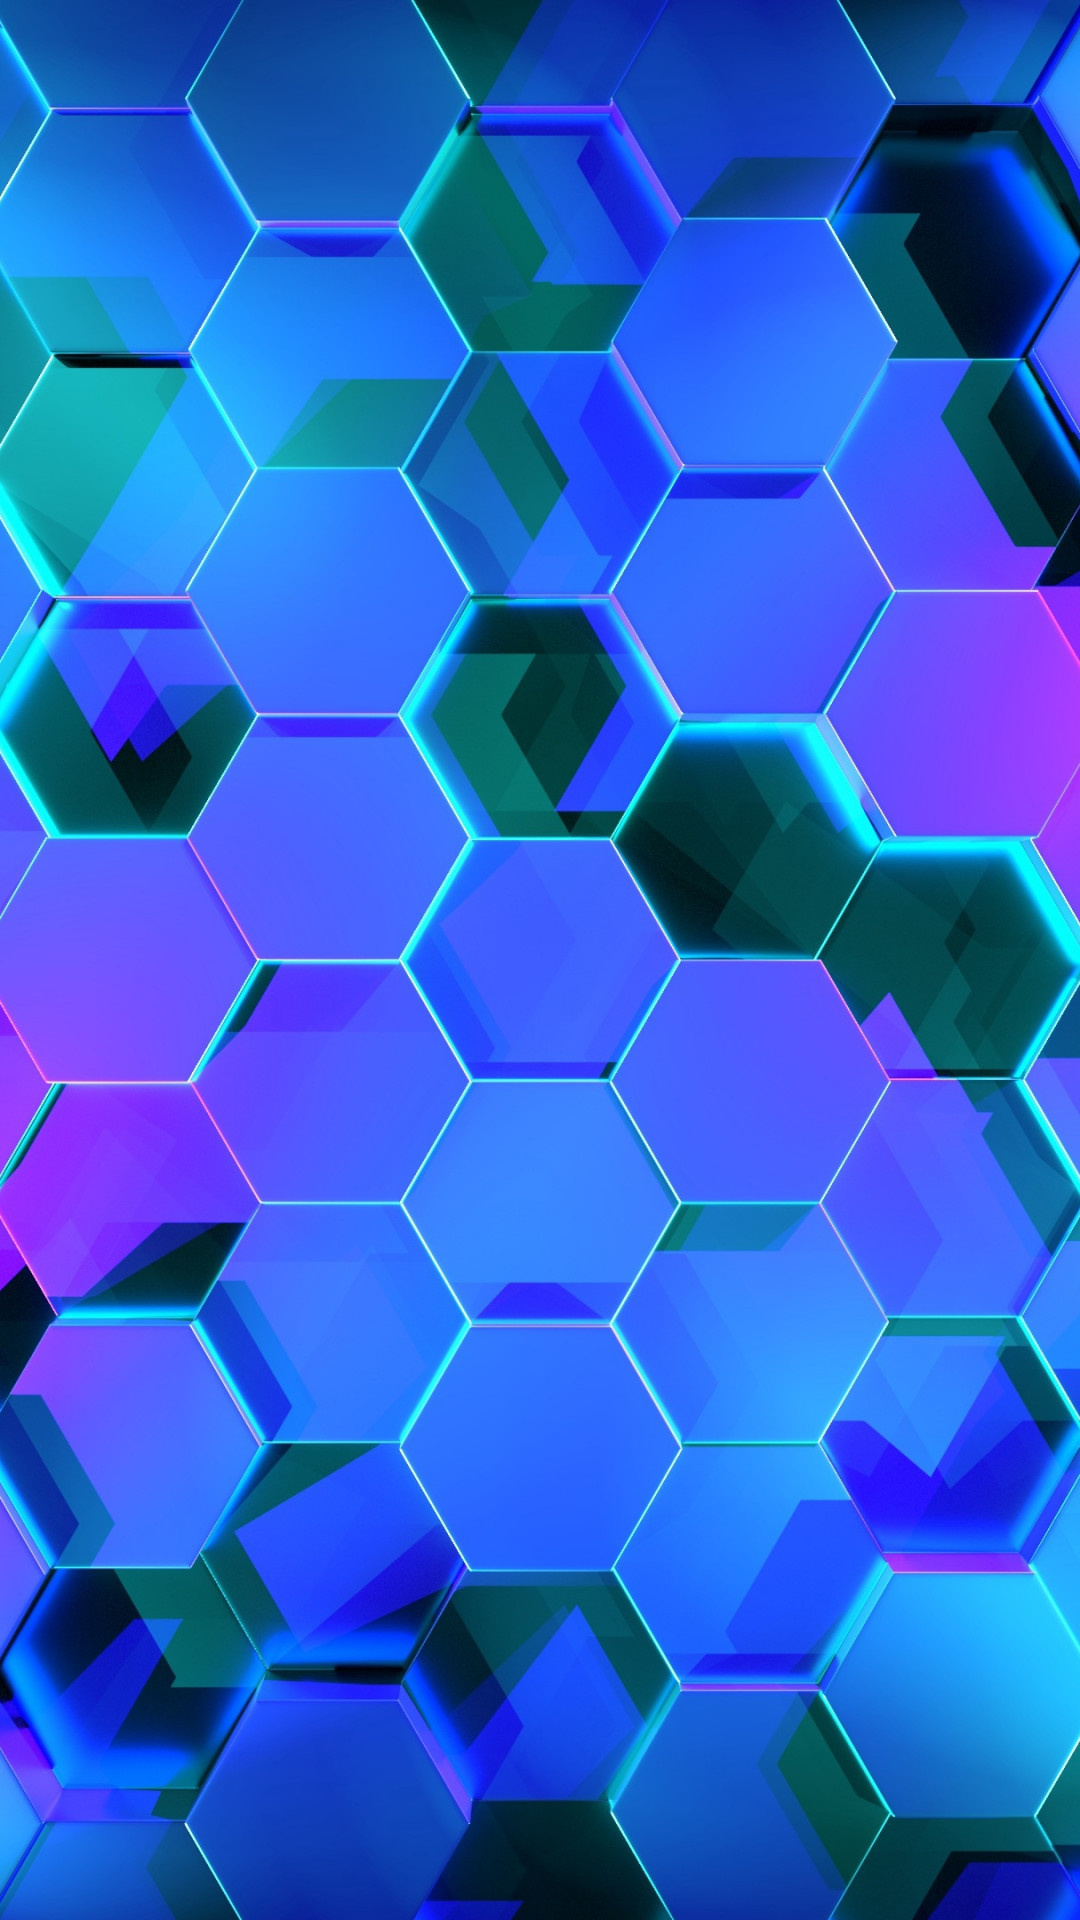 Abstract hexagon design, Widescreen wallpapers, Baltana website, Hexagon theme, 1080x1920 Full HD Handy